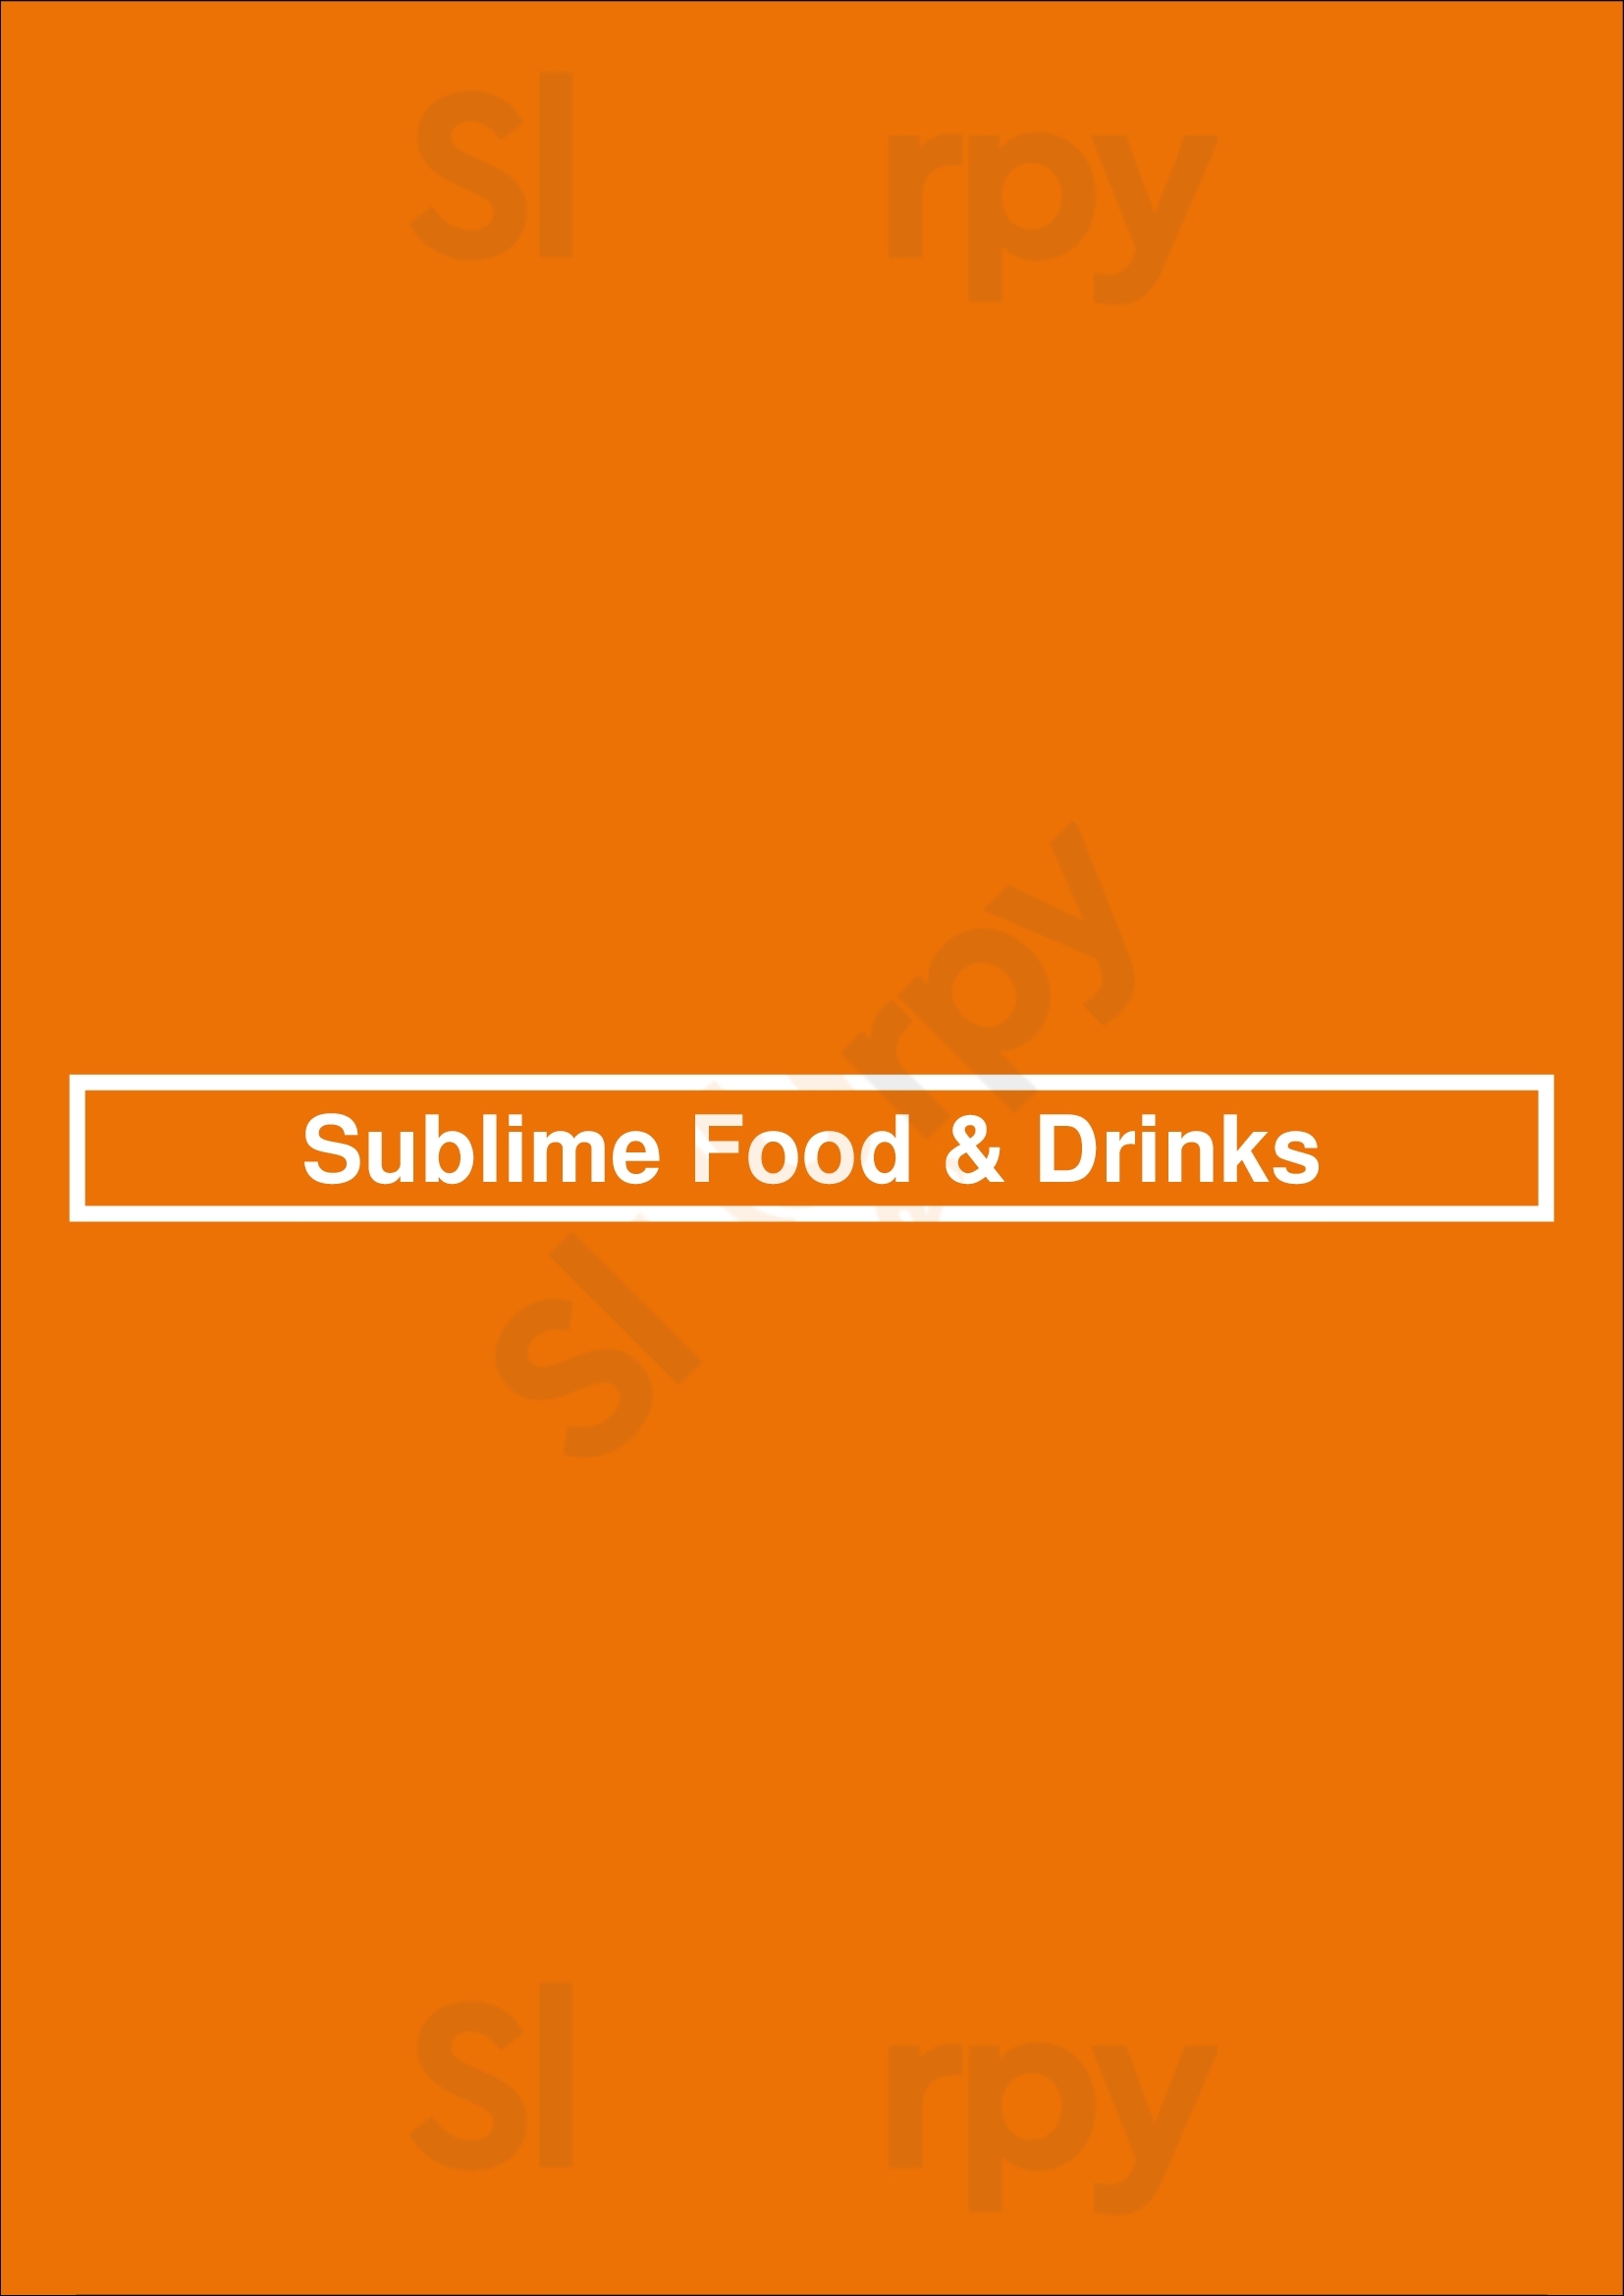 Sublime Food & Drinks Lisboa Menu - 1